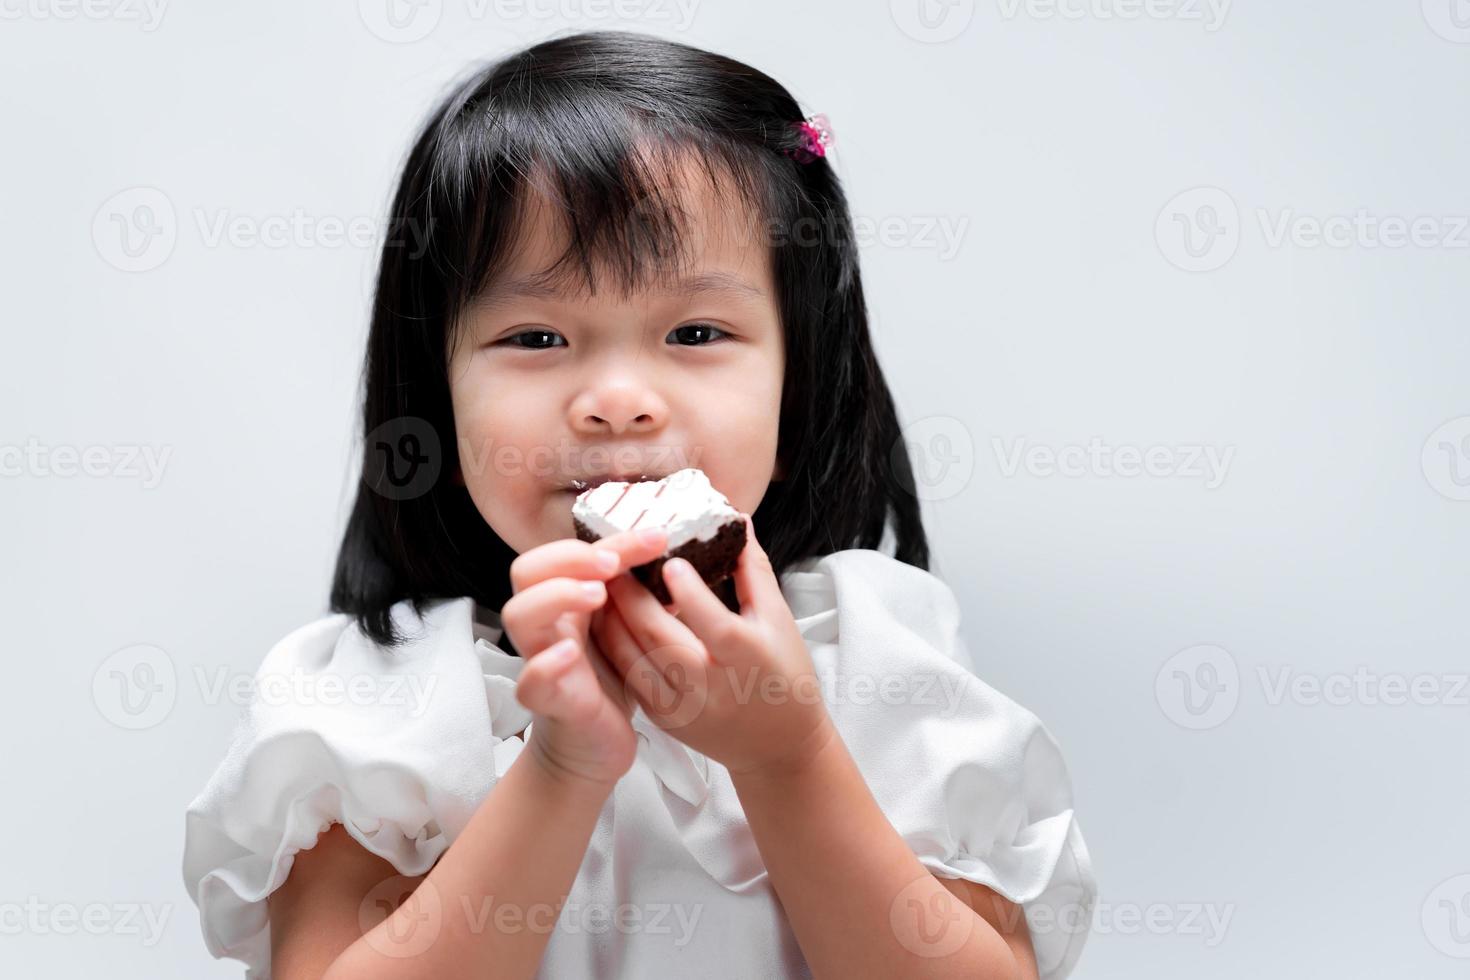 happy girl bits zoete chocoladetaart. ze draagt een wit overhemd. lief lachend. kinderconcept met het eten van snoep. foto